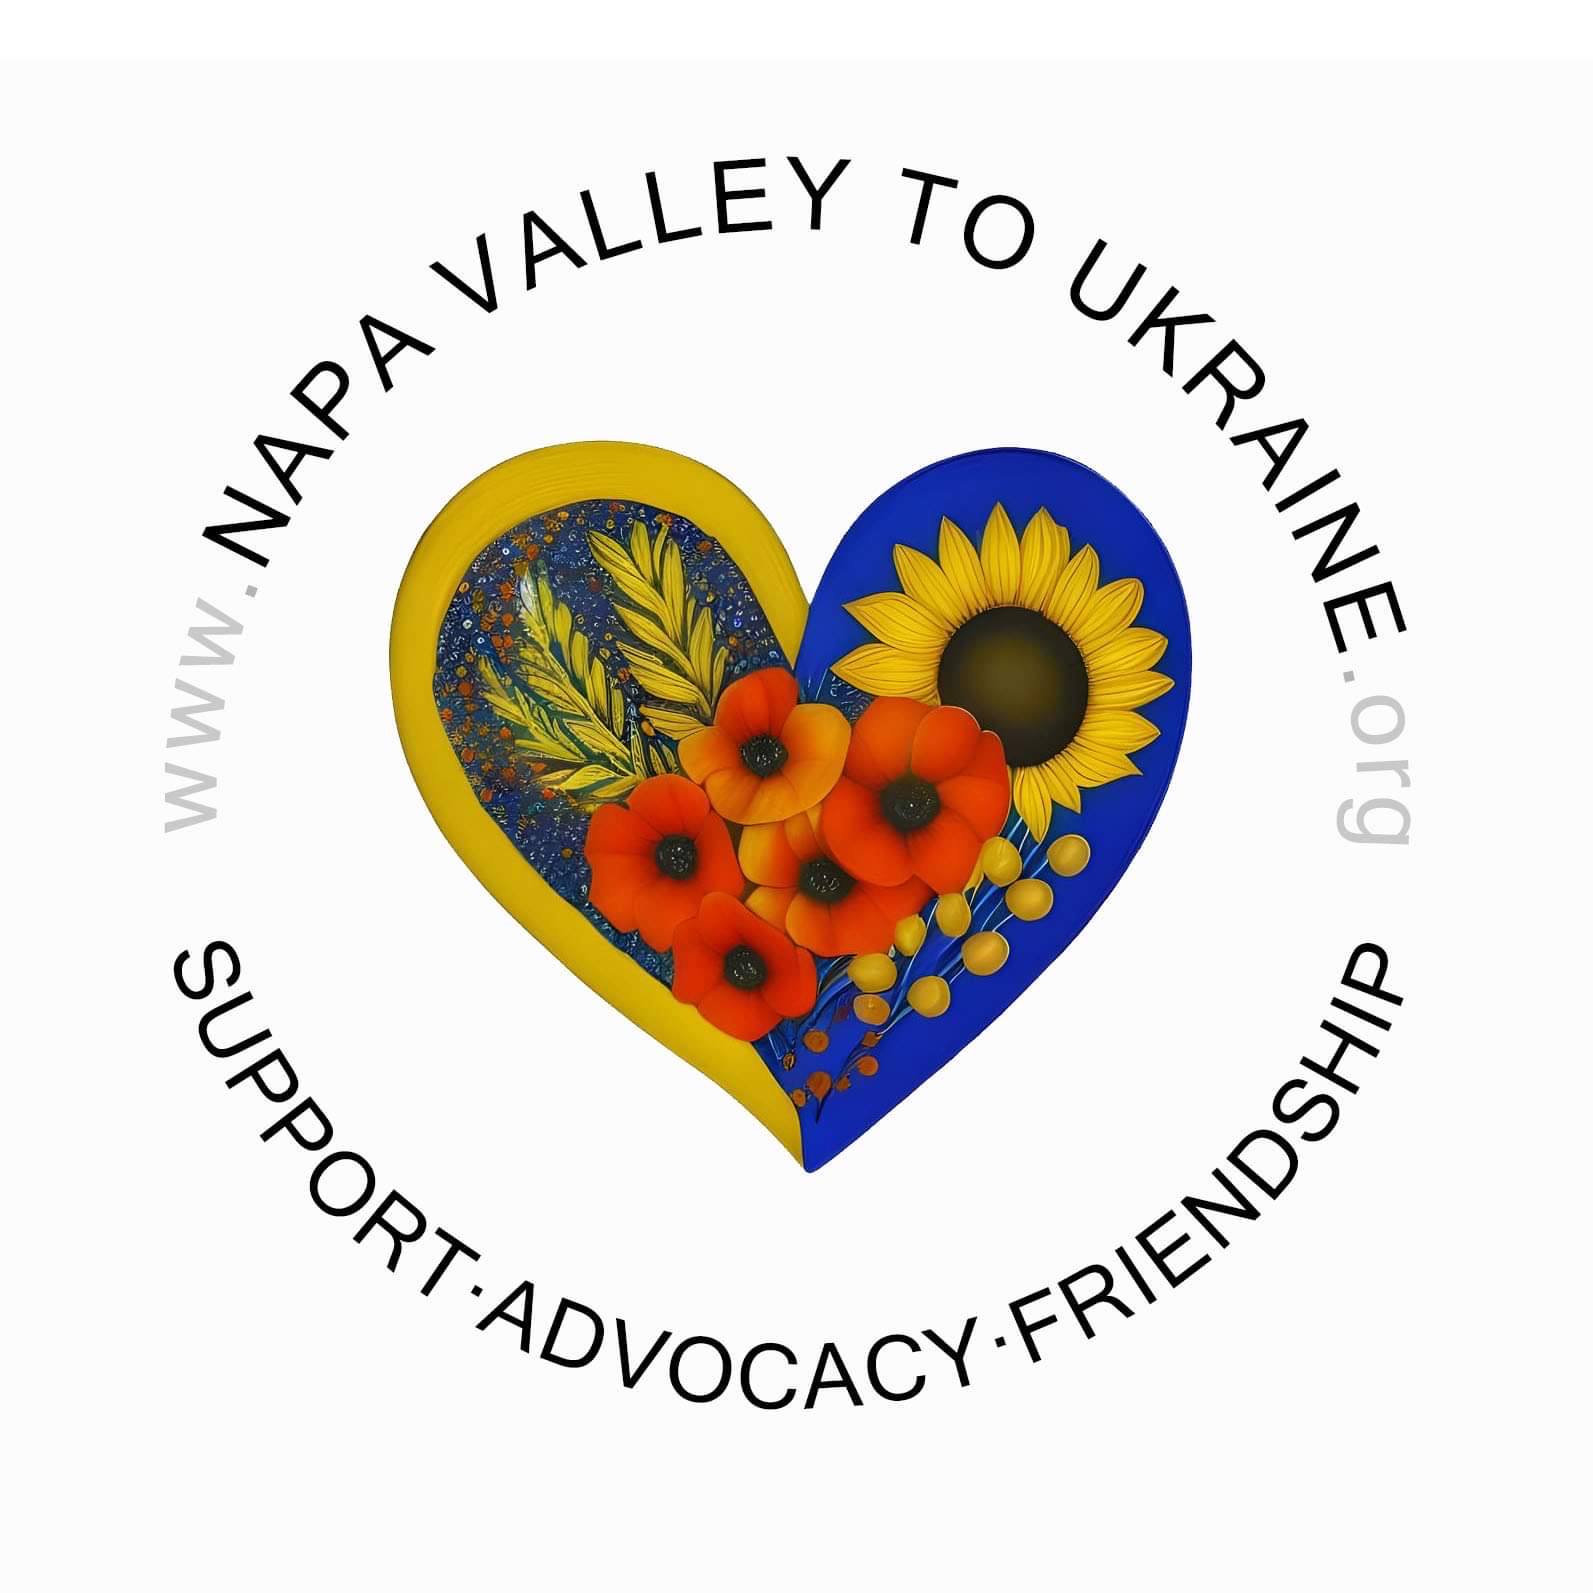 Napa Valley to Ukraine